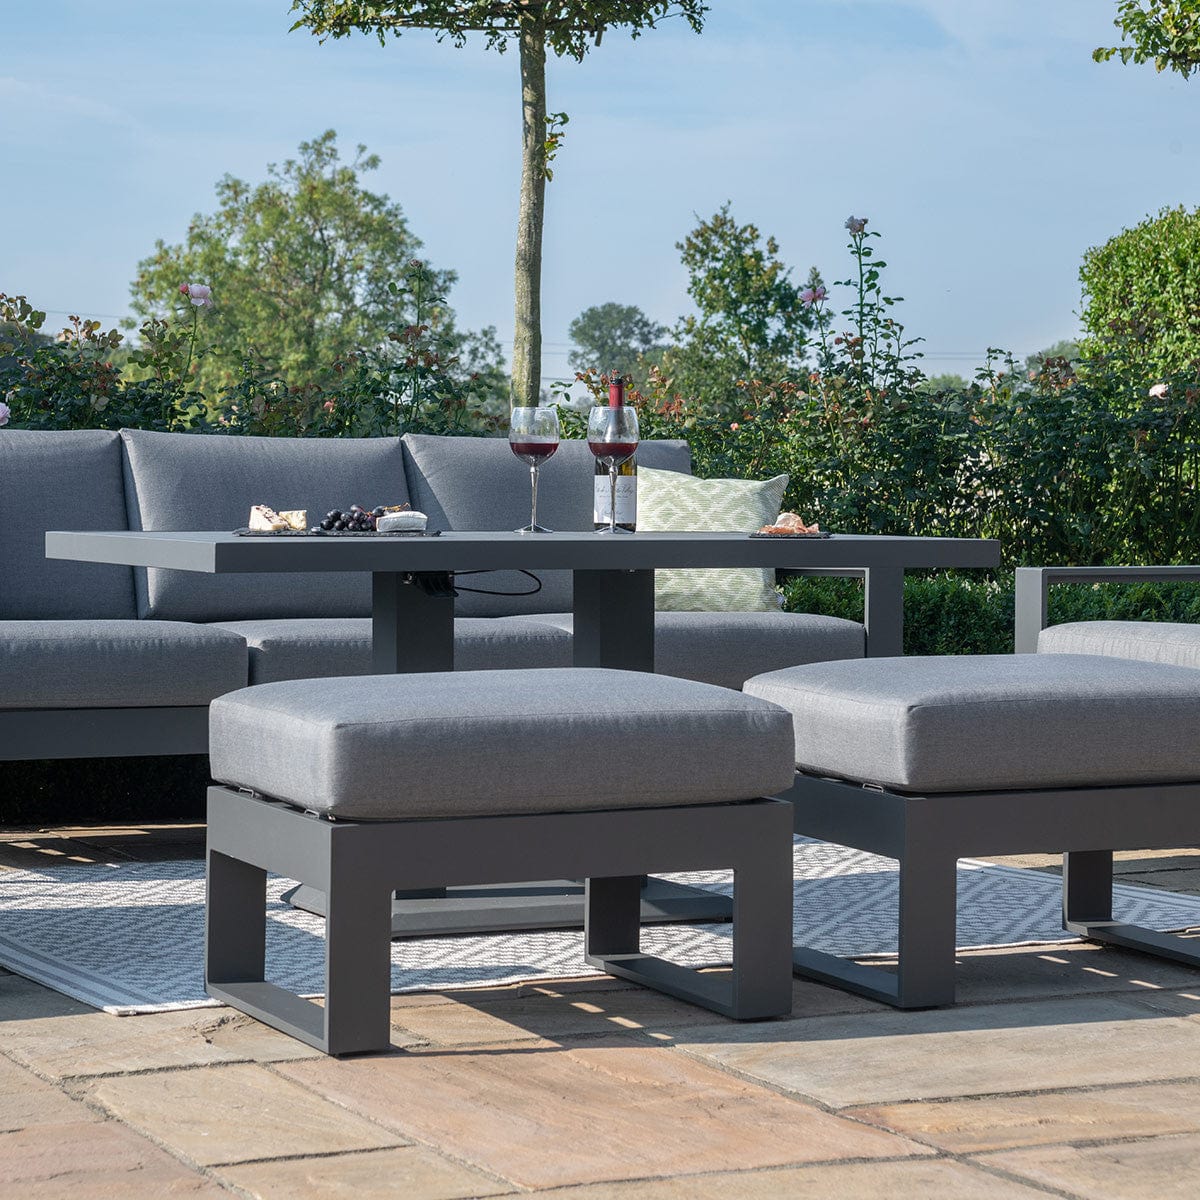 Maze Outdoors Amalfi 3 Seat Sofa Set With Rising Table / Grey House of Isabella UK